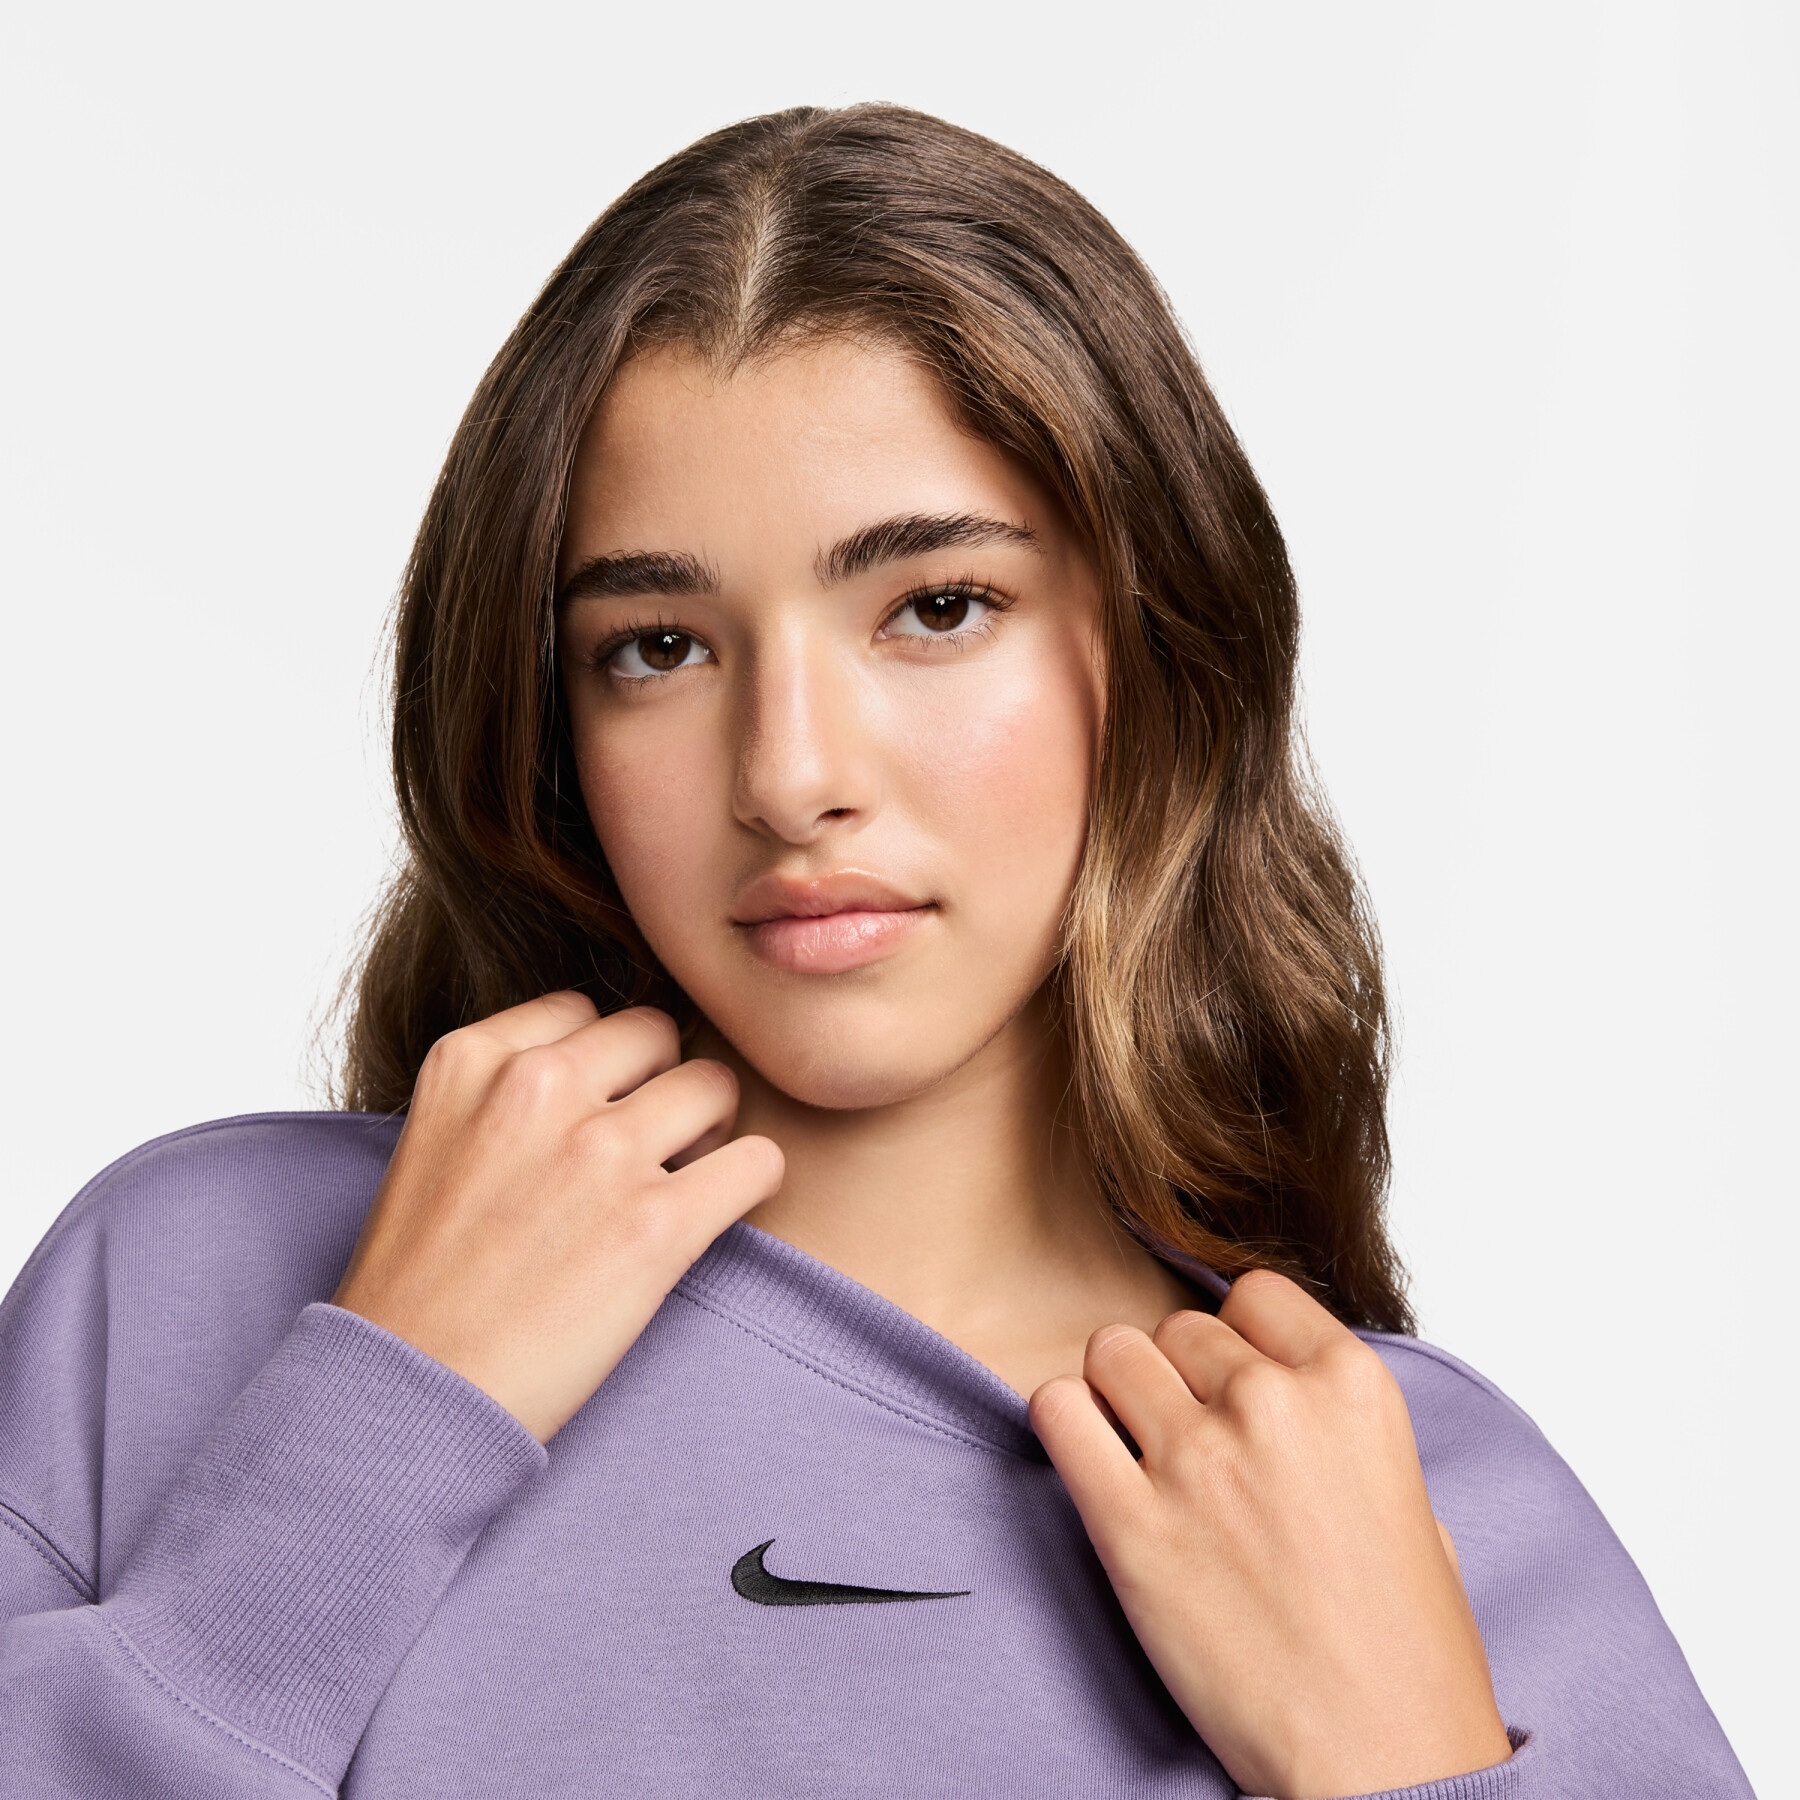 Sweatshirt round neck woman Nike Phoenix Fleece